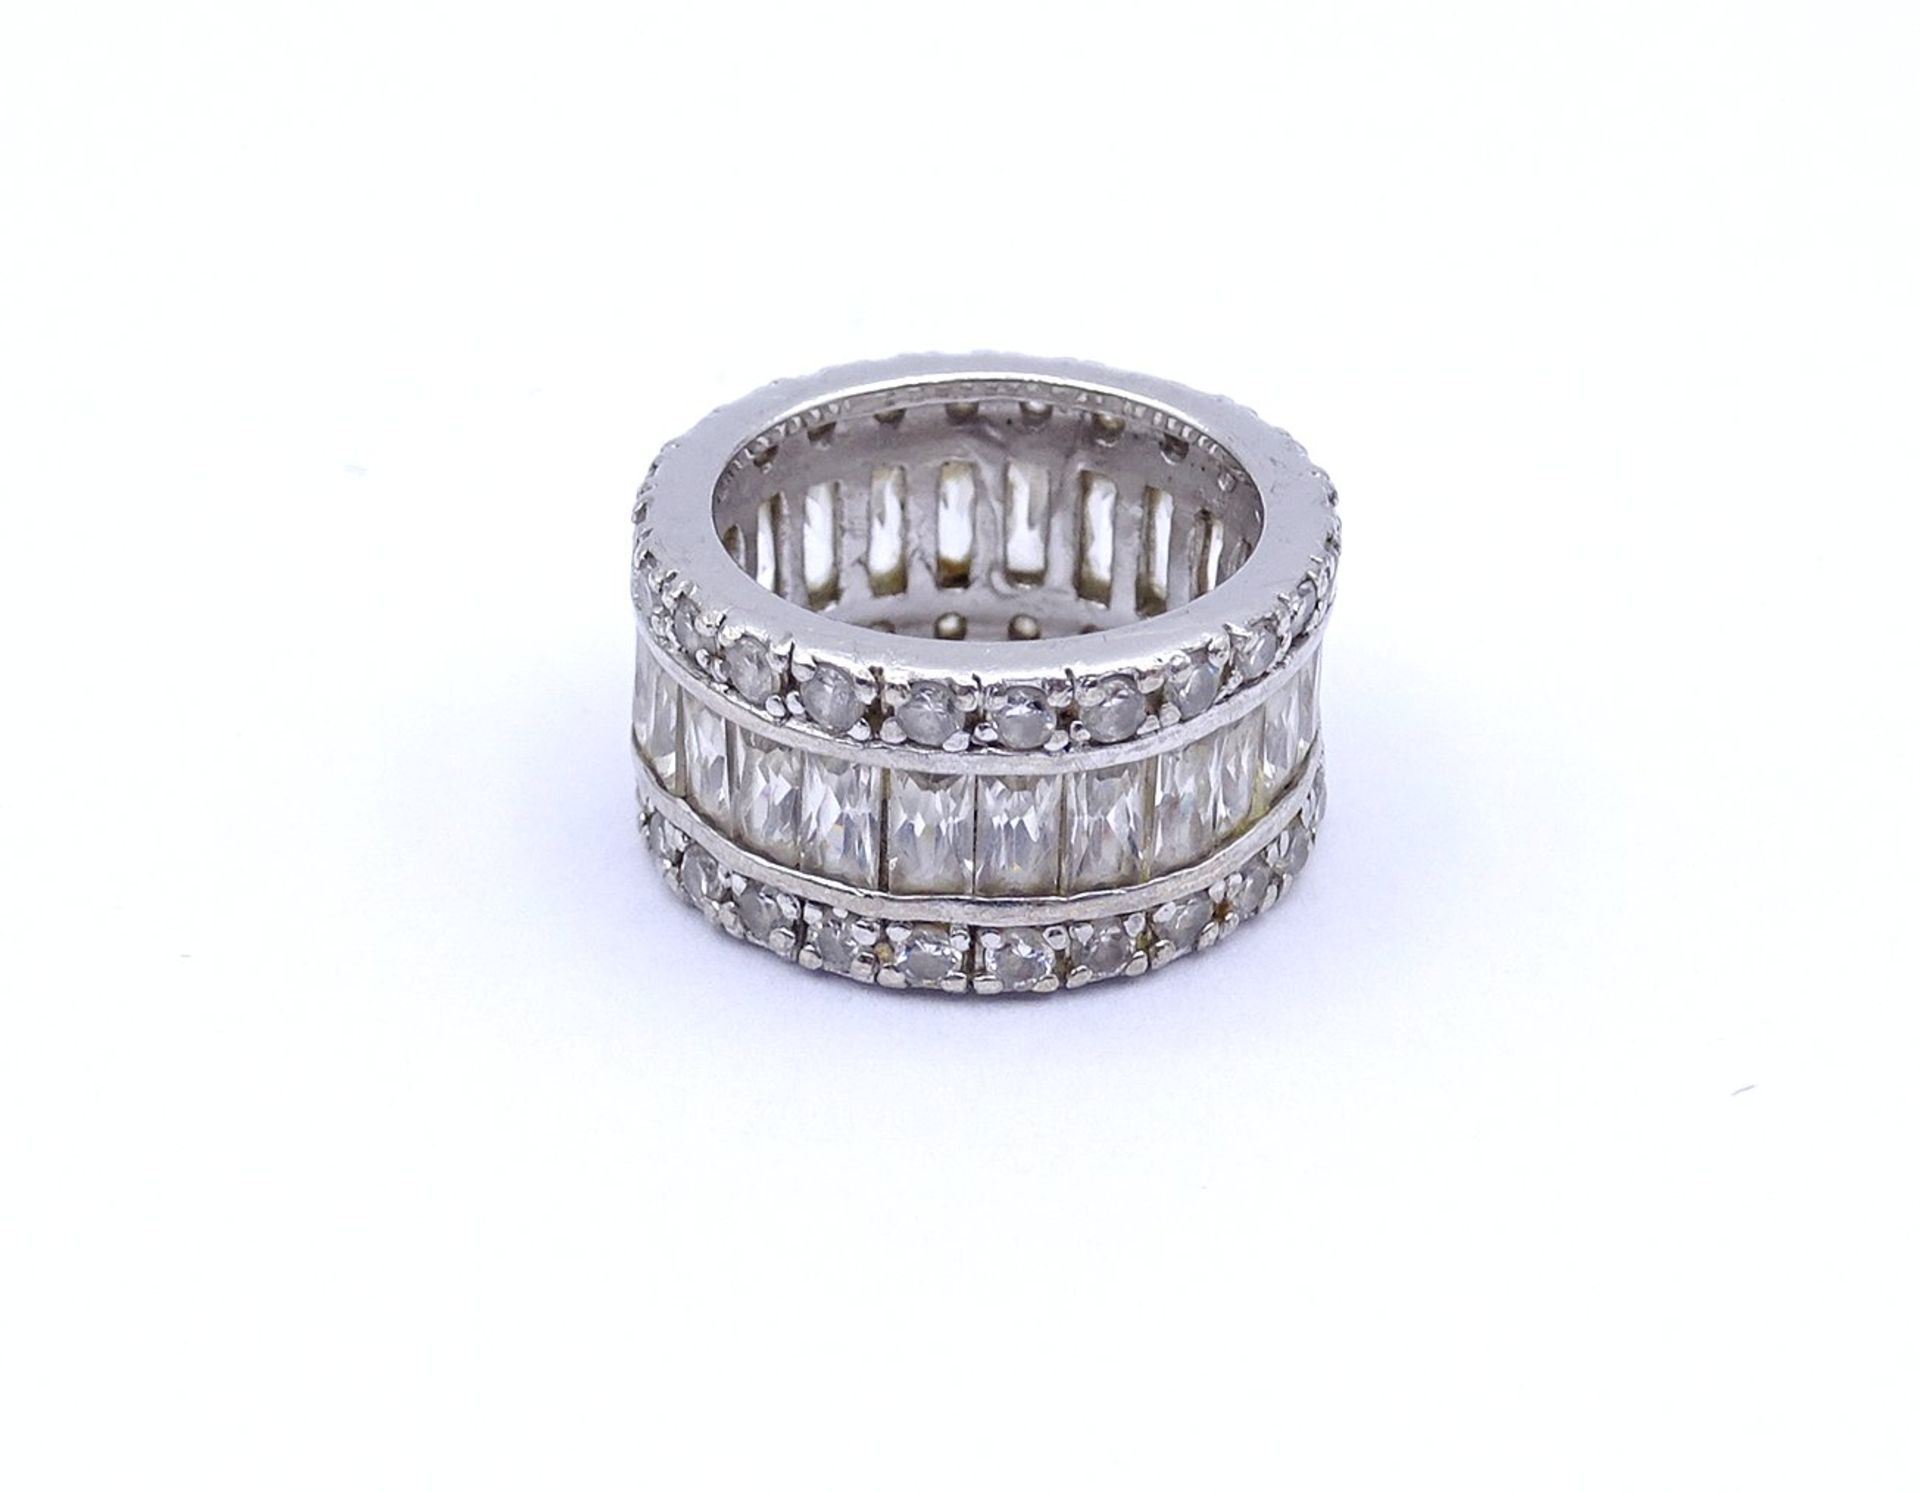 925er Silber Ring mit klaren Steinen, 9,6g., RG 52 - Image 2 of 3